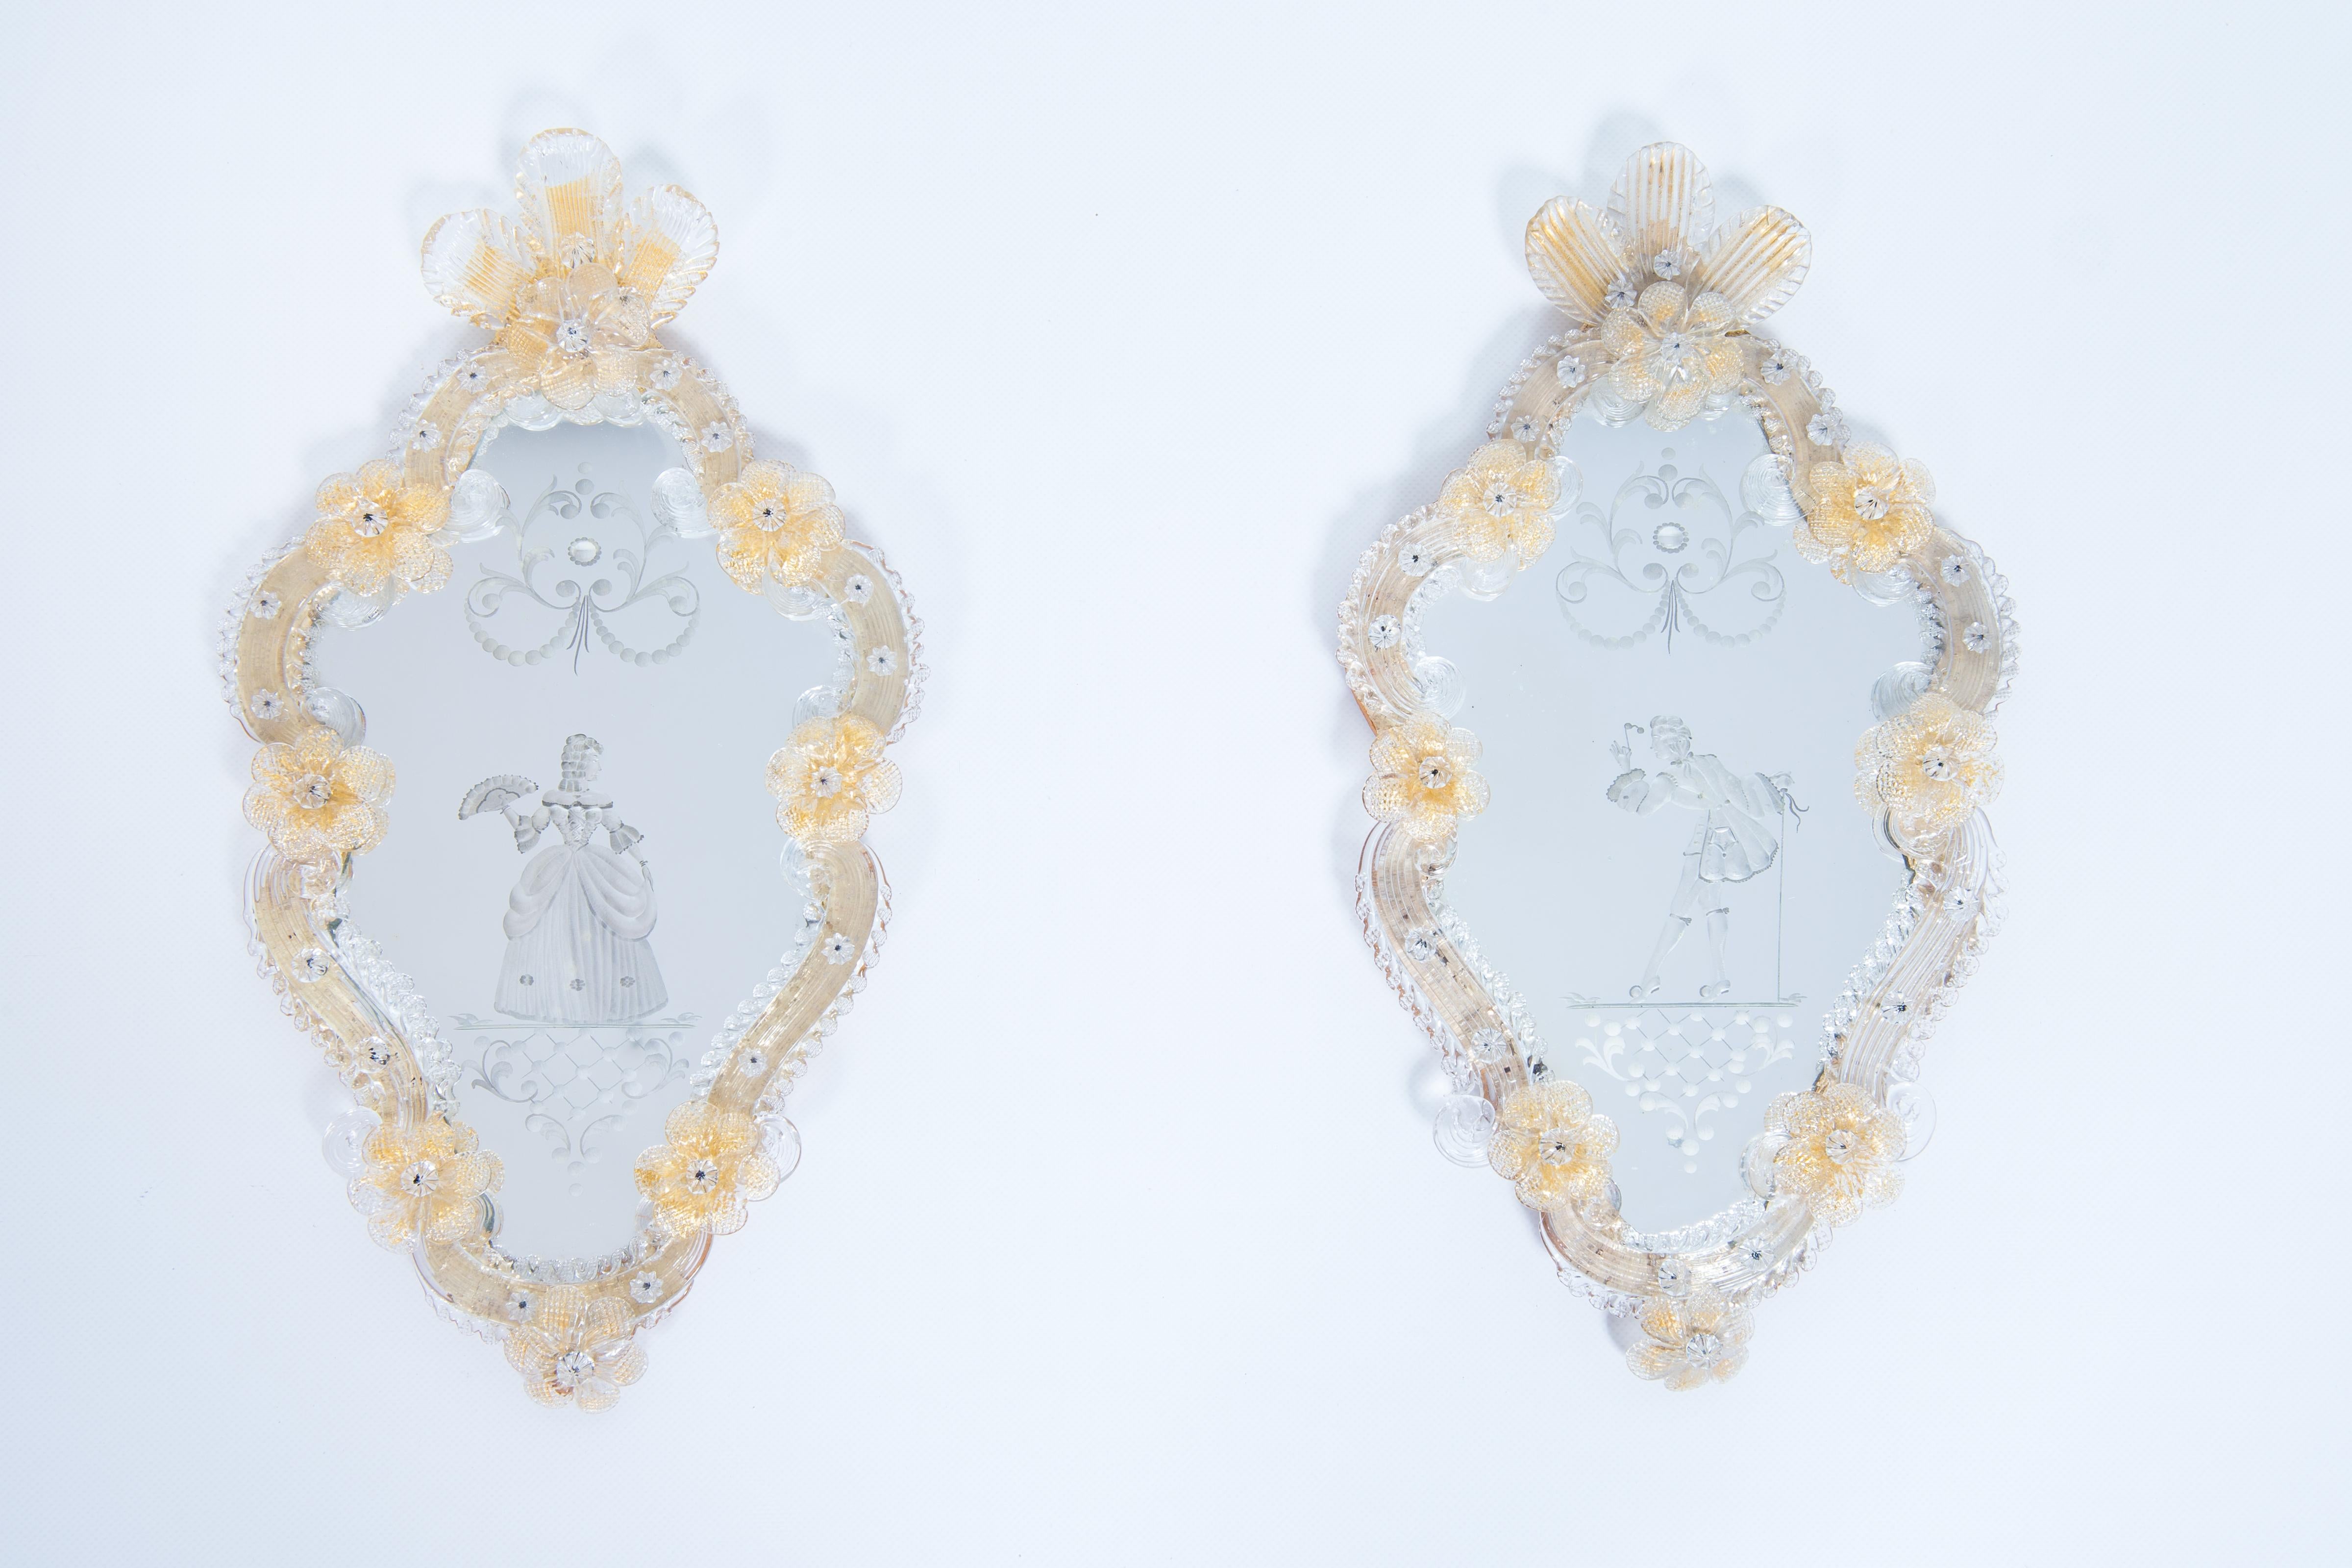 Paire de miroirs vénitiens Sir & Lady en verre de Murano gravé, finitions dorées, années 1900

Cette paire de miroirs en verre de Murano, entièrement réalisée à la main par des maîtres verriers vénitiens dans les années 1900, est un meuble raffiné